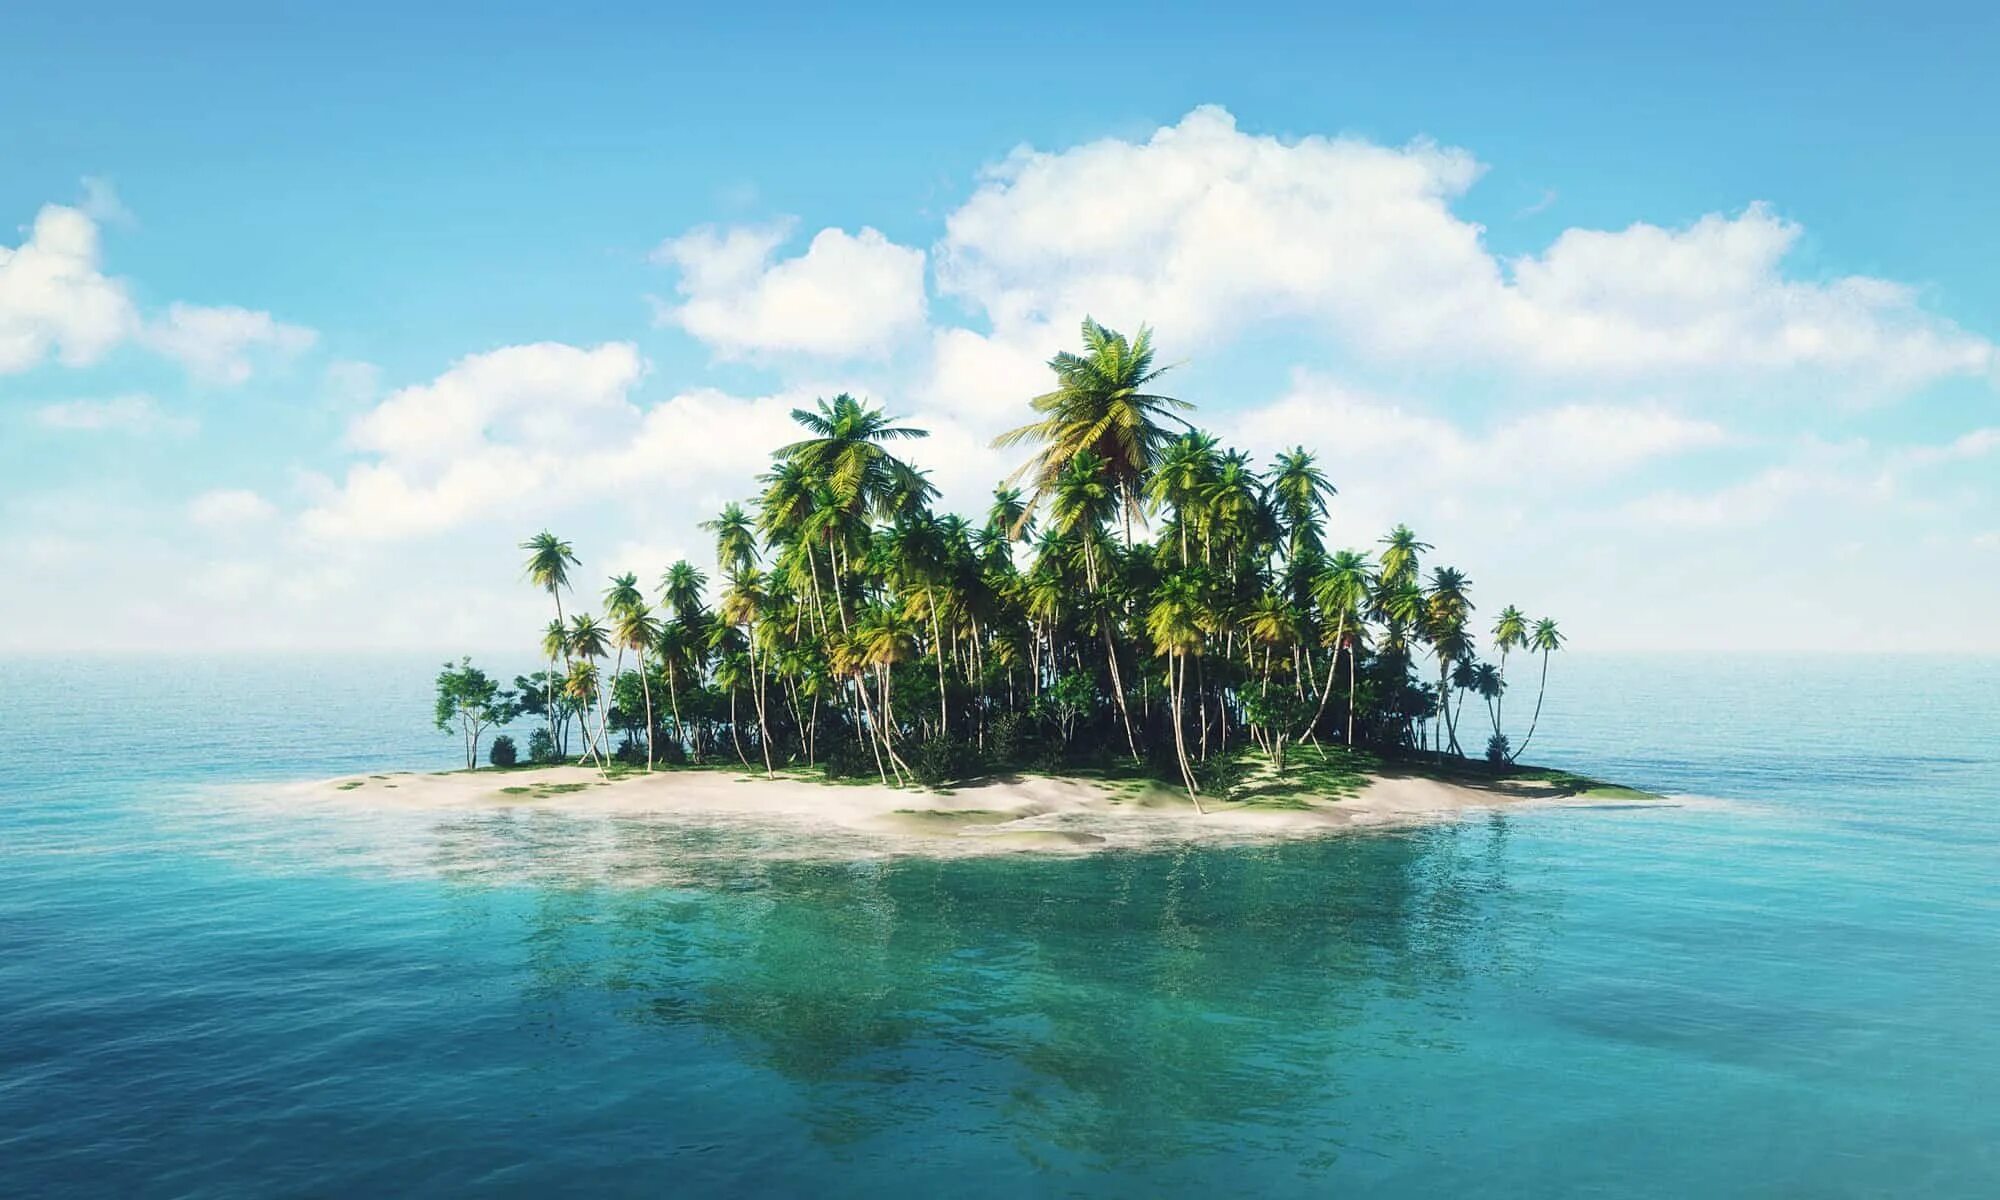 Remote island. Необитаемые острова. Тропический остров. Тропический остров в далеке. Необитаемый остров картинки.